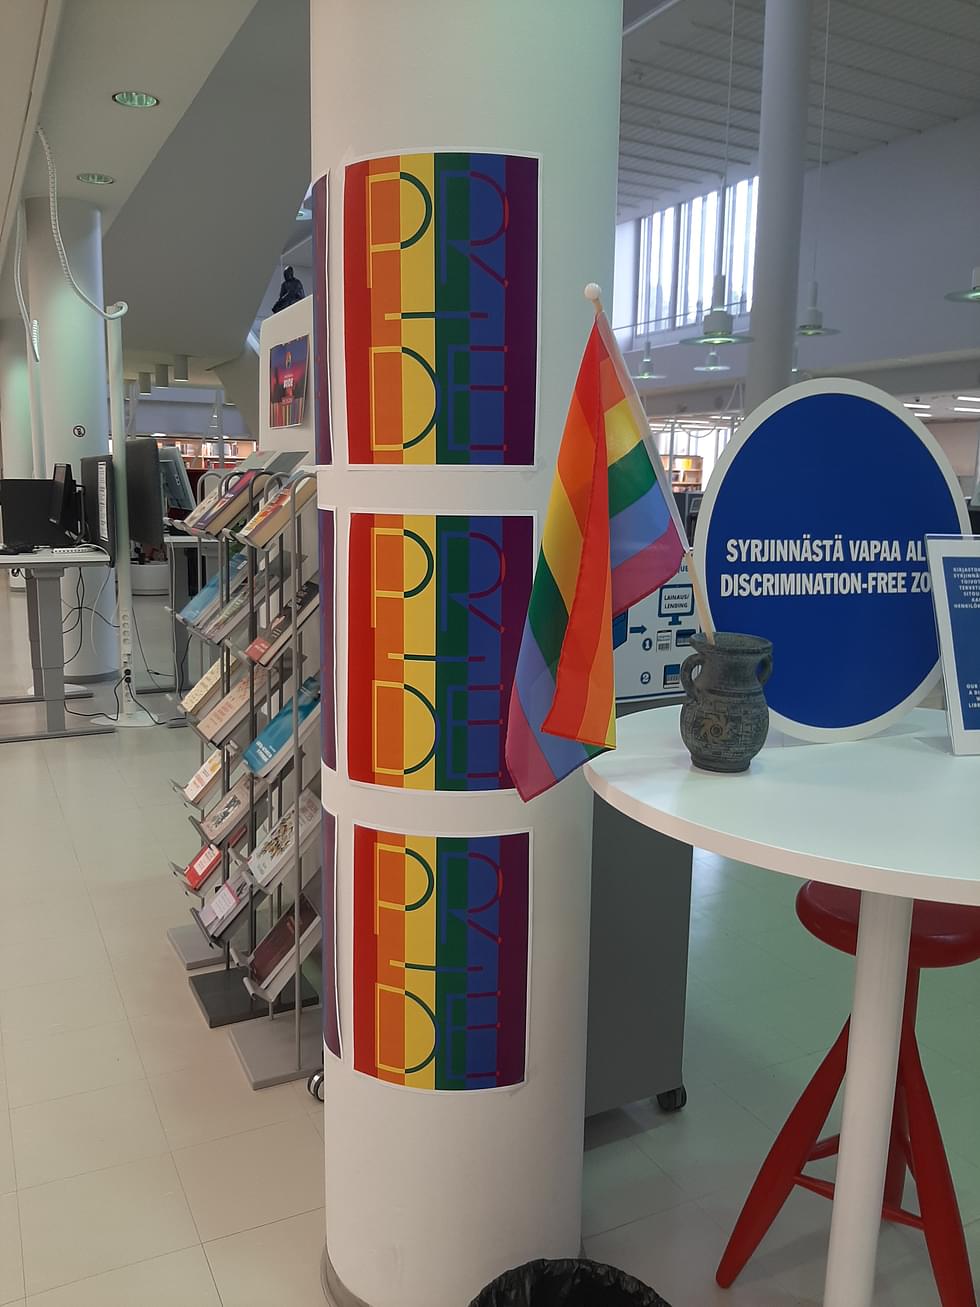 Pride-teemaisiin koristeluihin saattaa törmätä esimerkiksi kirjastoissa tai muissa julkisissa tiloissa.